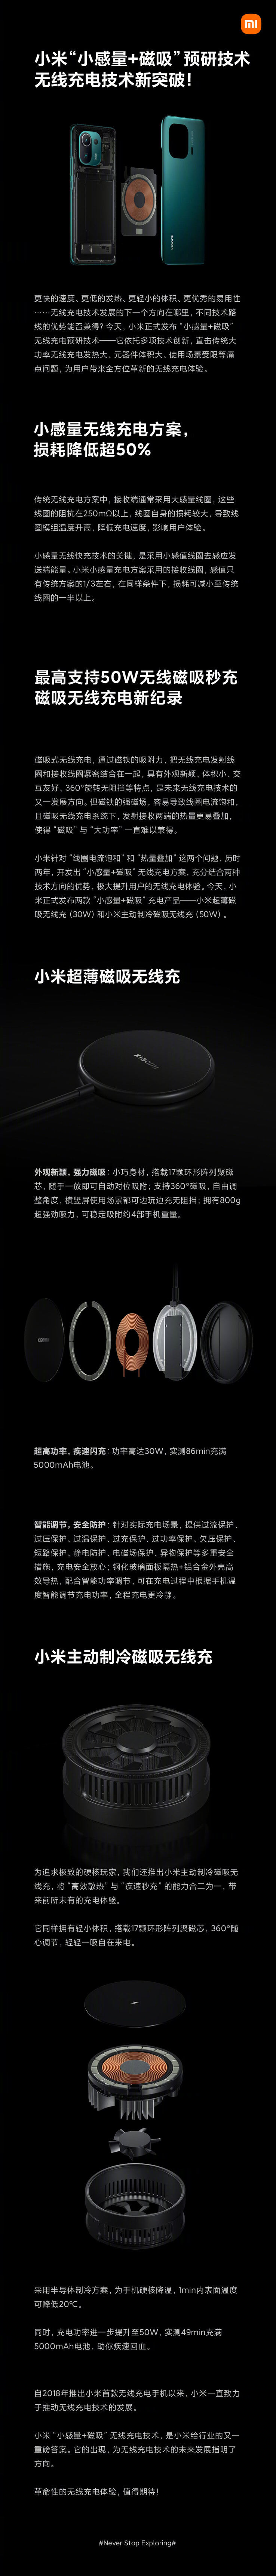 Xiaomi apresenta um infográfico para sua nova tecnologia de carregamento sem fio. (Fonte: Xiaomi via Weibo)